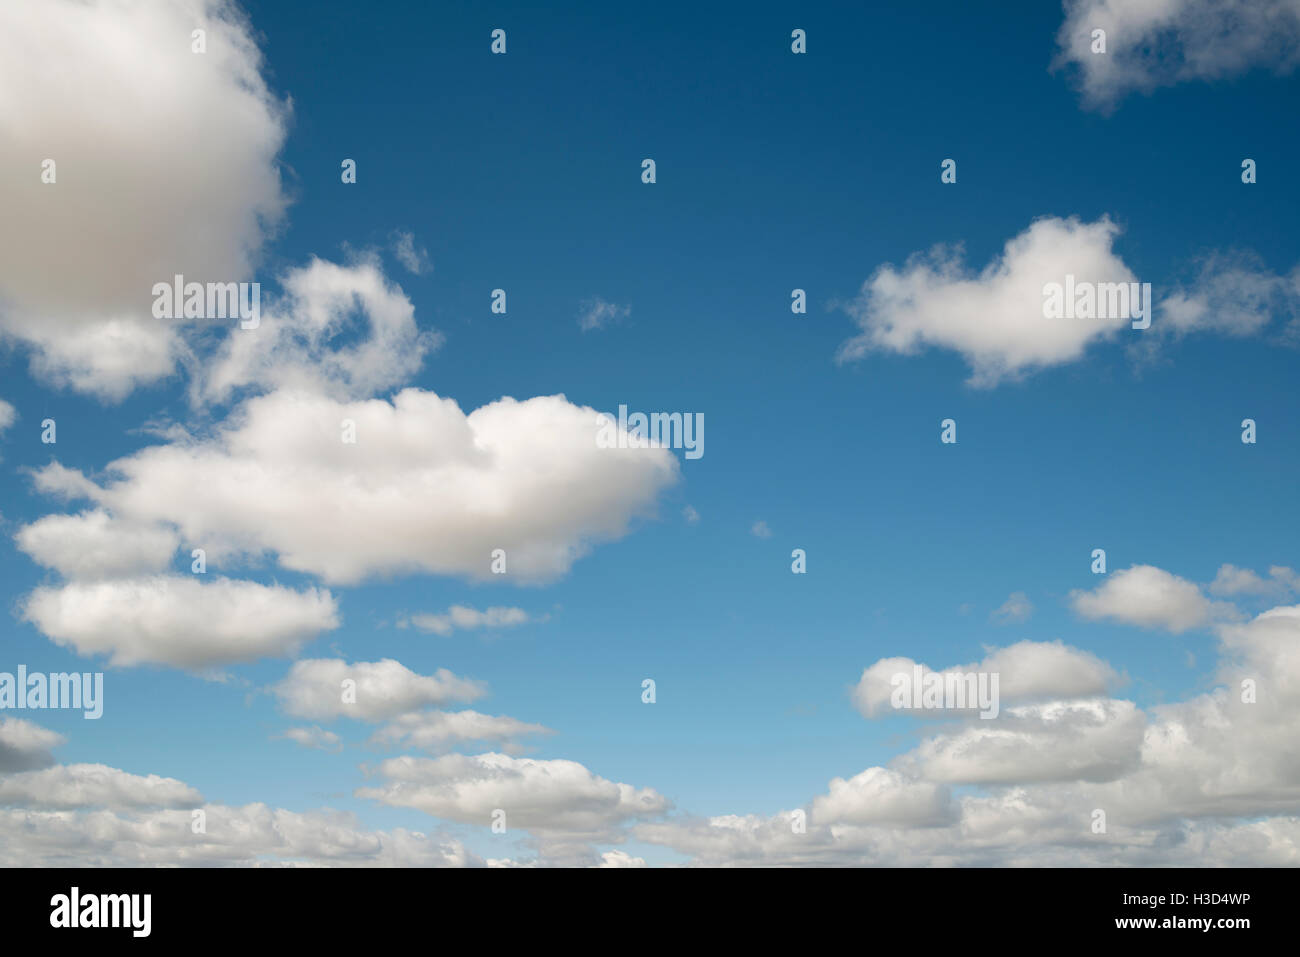 Basso angolo di visione del cielo molto nuvoloso Foto Stock